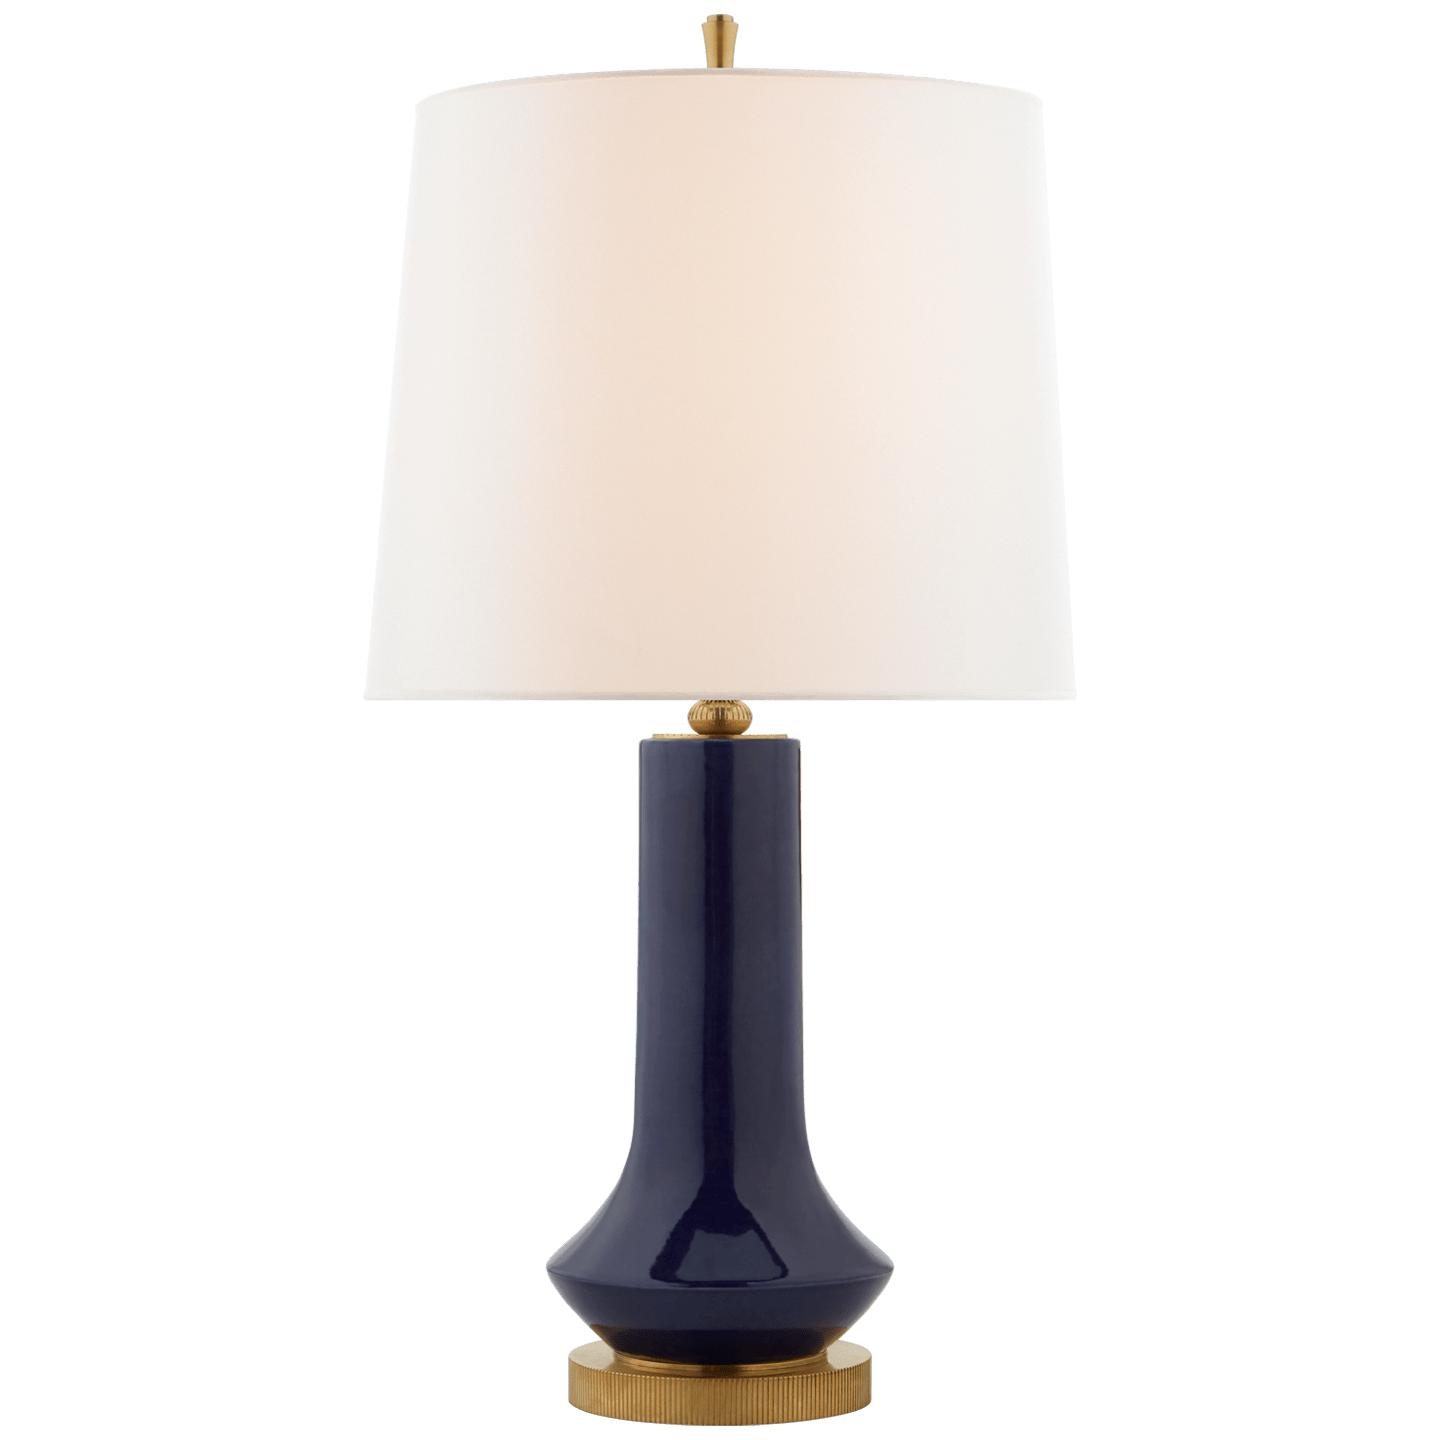 Купить Настольная лампа Luisa Large Table Lamp в интернет-магазине roooms.ru